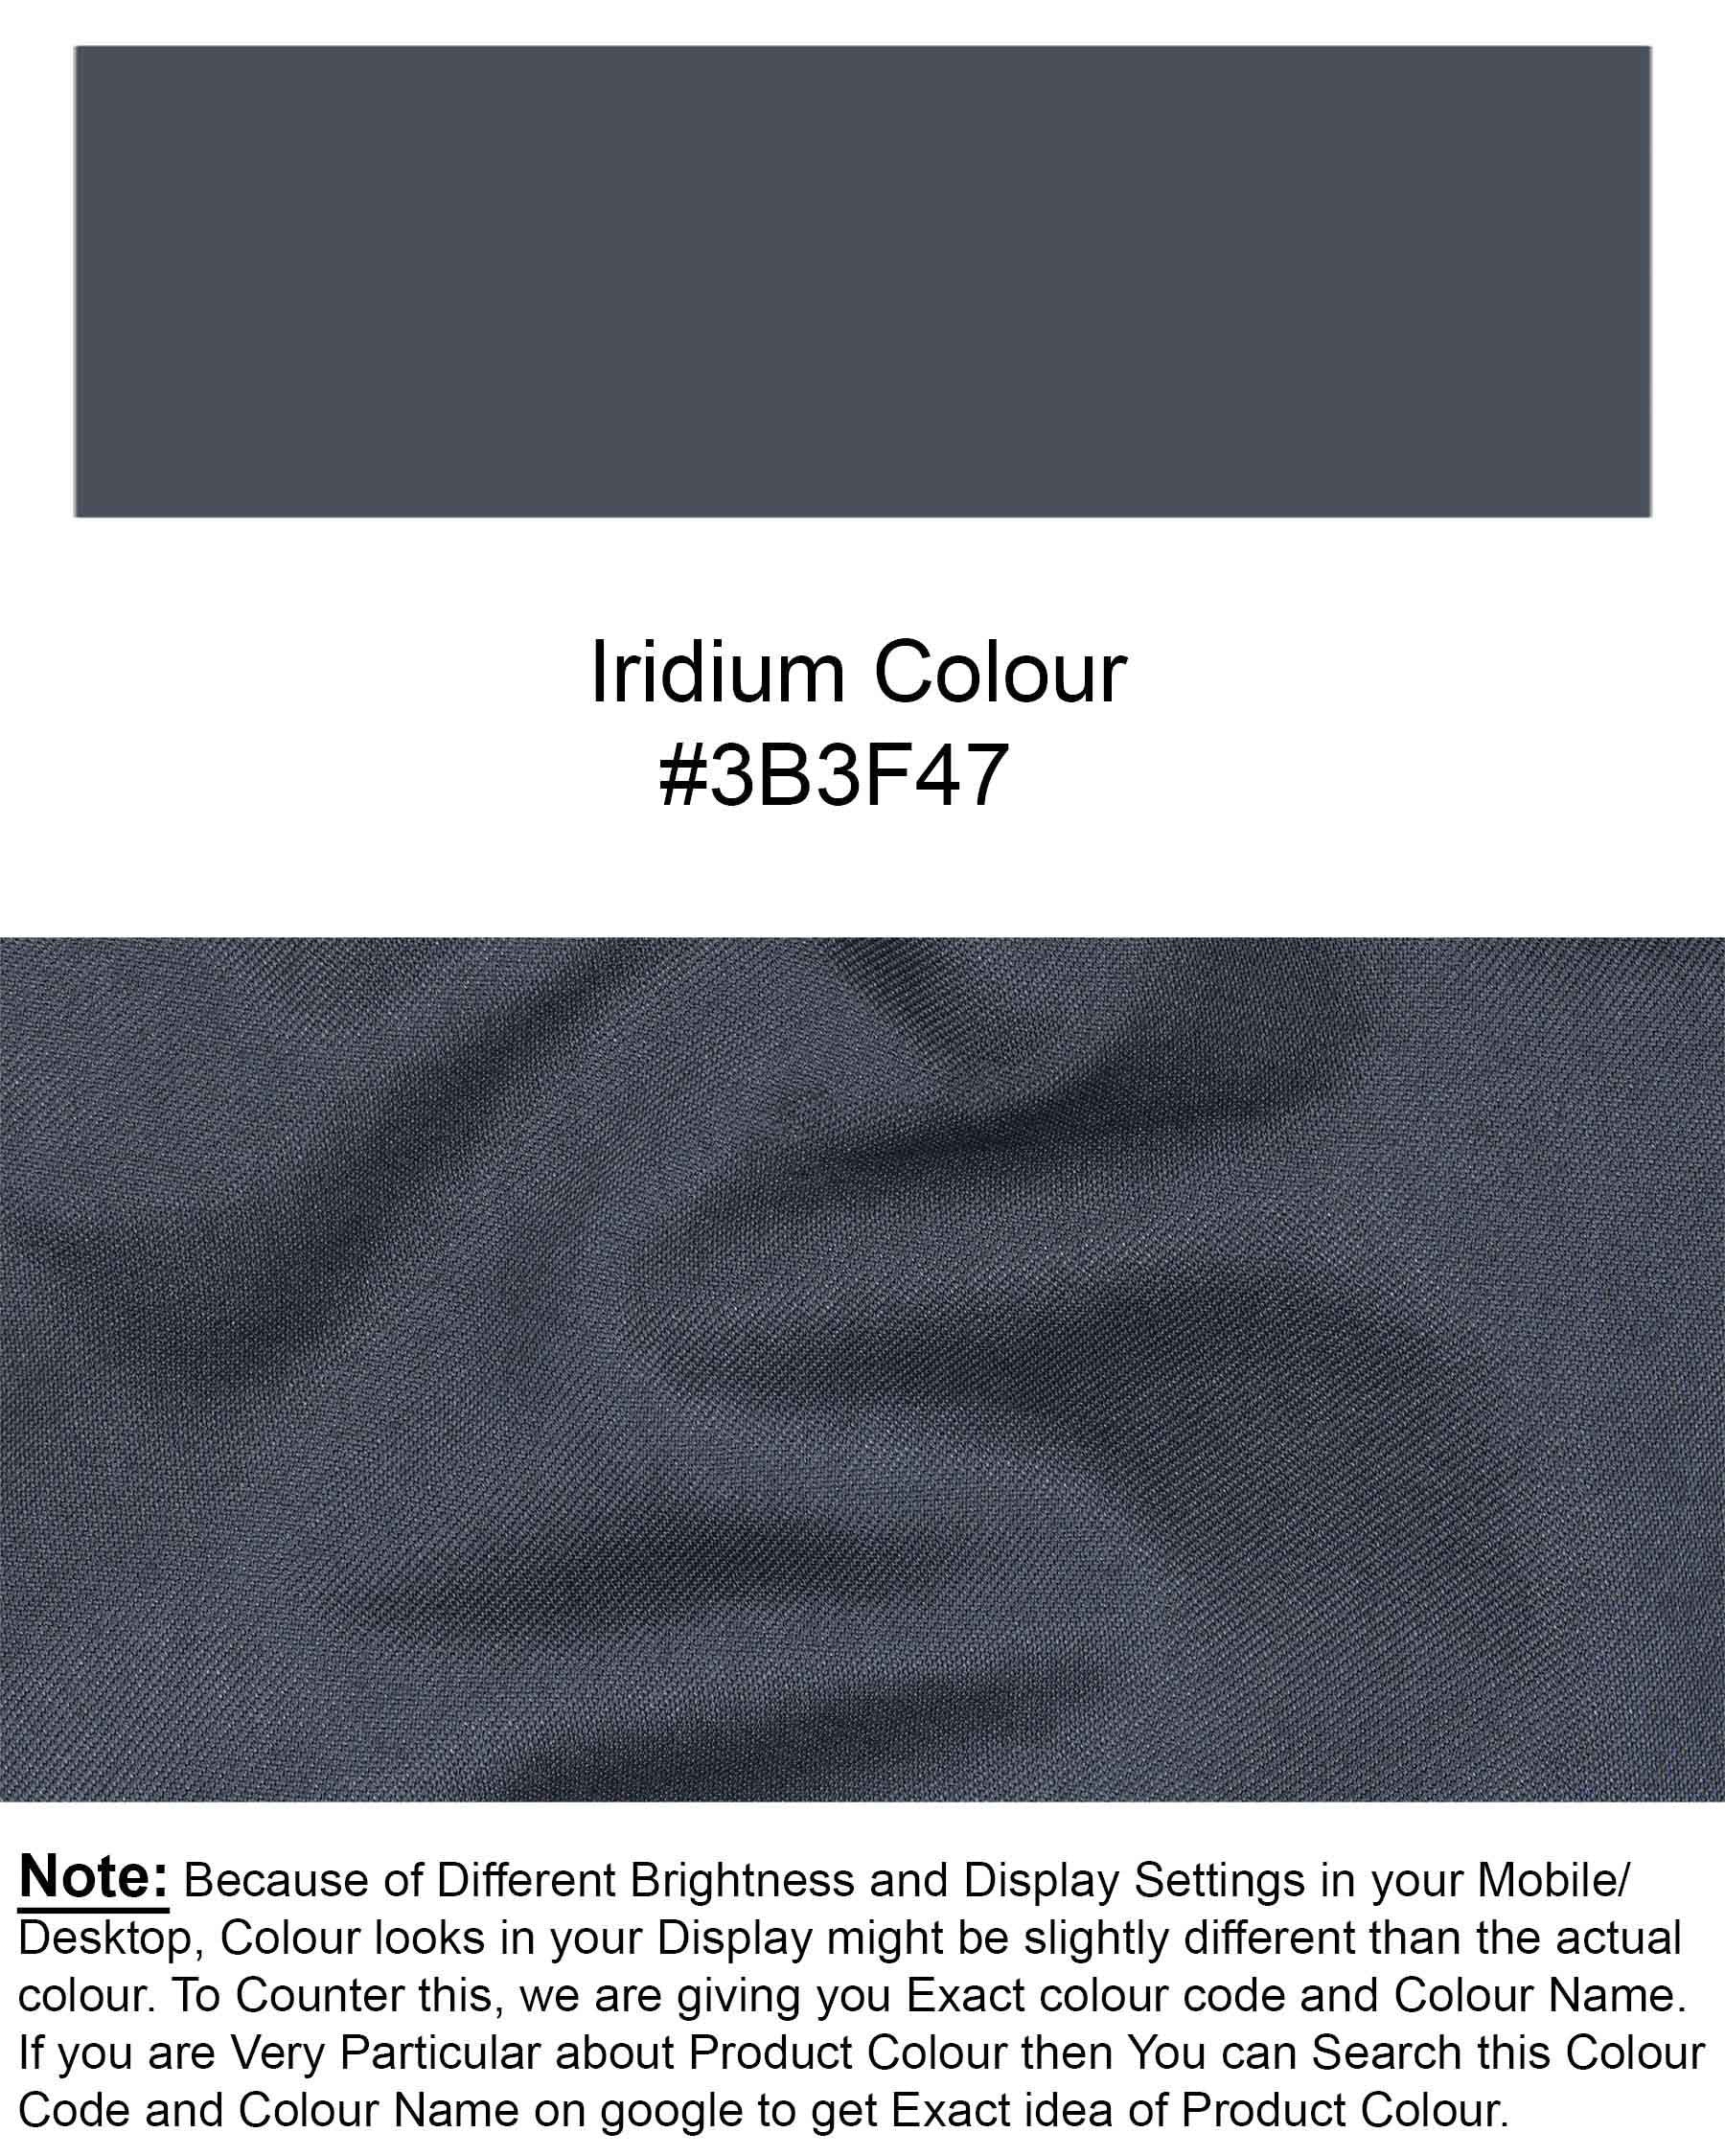 Iridium Grey Double Breasted Suit ST1913-DB-36, ST1913-DB-38, ST1913-DB-40, ST1913-DB-42, ST1913-DB-44, ST1913-DB-46, ST1913-DB-48, ST1913-DB-50, ST1913-DB-52, ST1913-DB-54, ST1913-DB-56, ST1913-DB-58, ST1913-DB-60